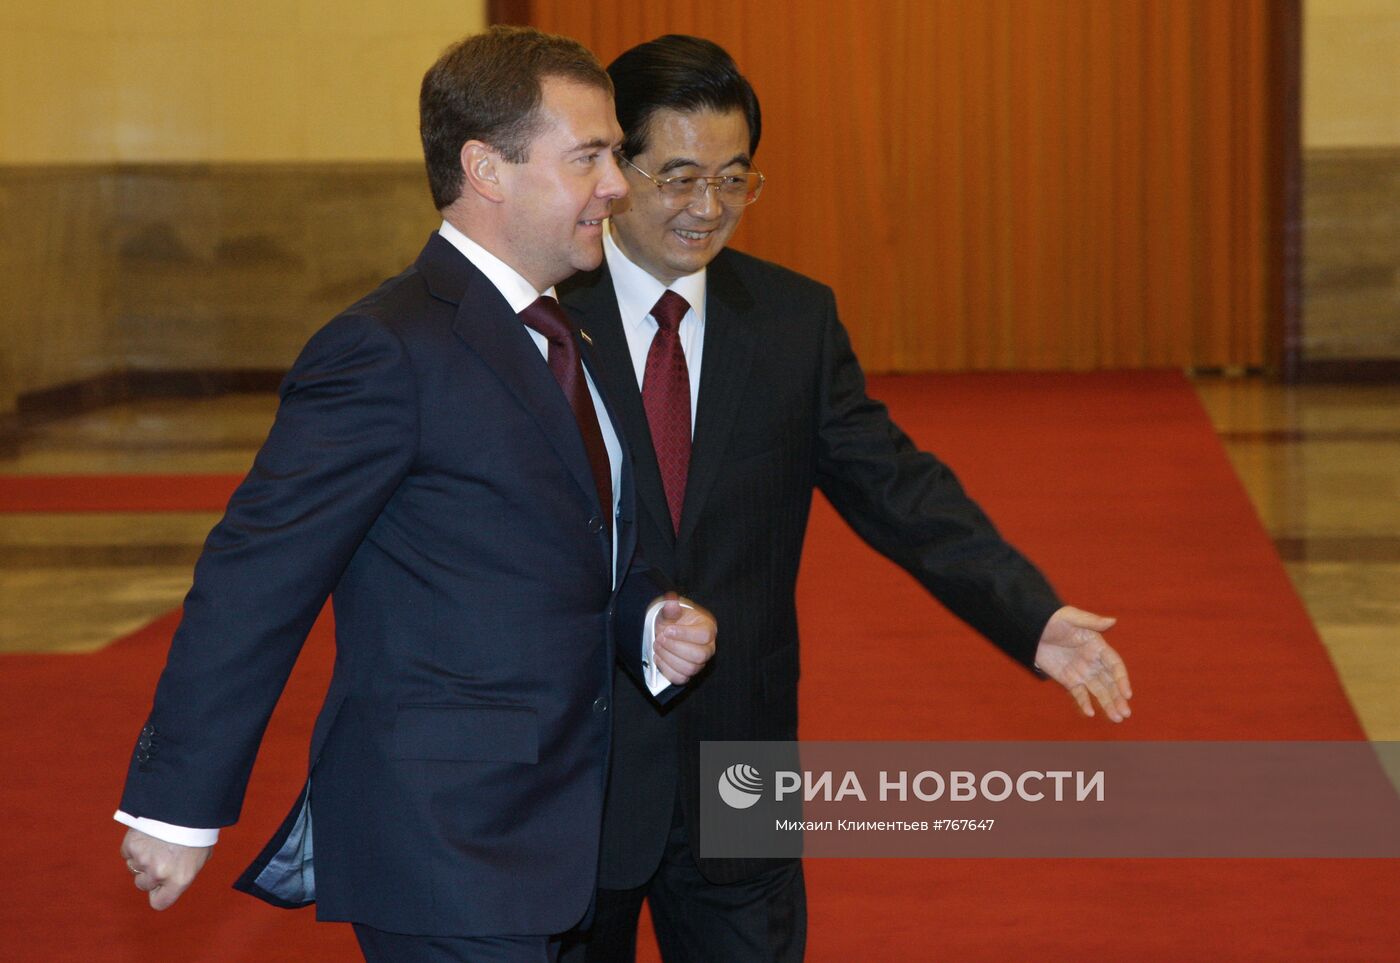 Официальный визит Дмитрия Медведева в Китай. Второй день